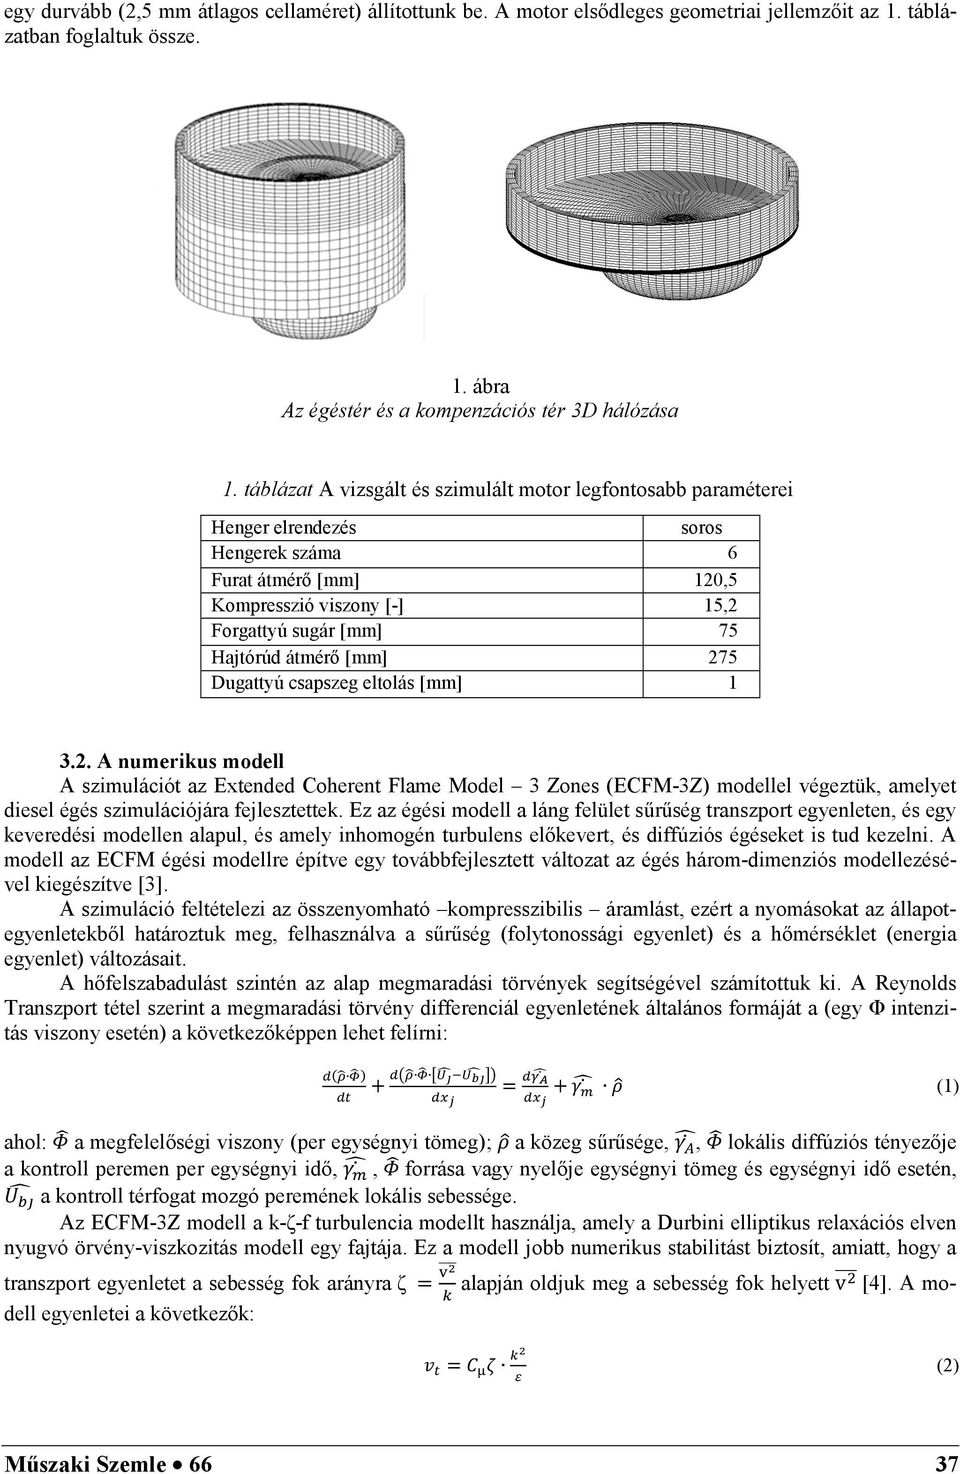 SZABADOS György, tudományos munkatárs 1 LOVAS Máté, MSC gépészmérnök  hallgató 2 - PDF Ingyenes letöltés